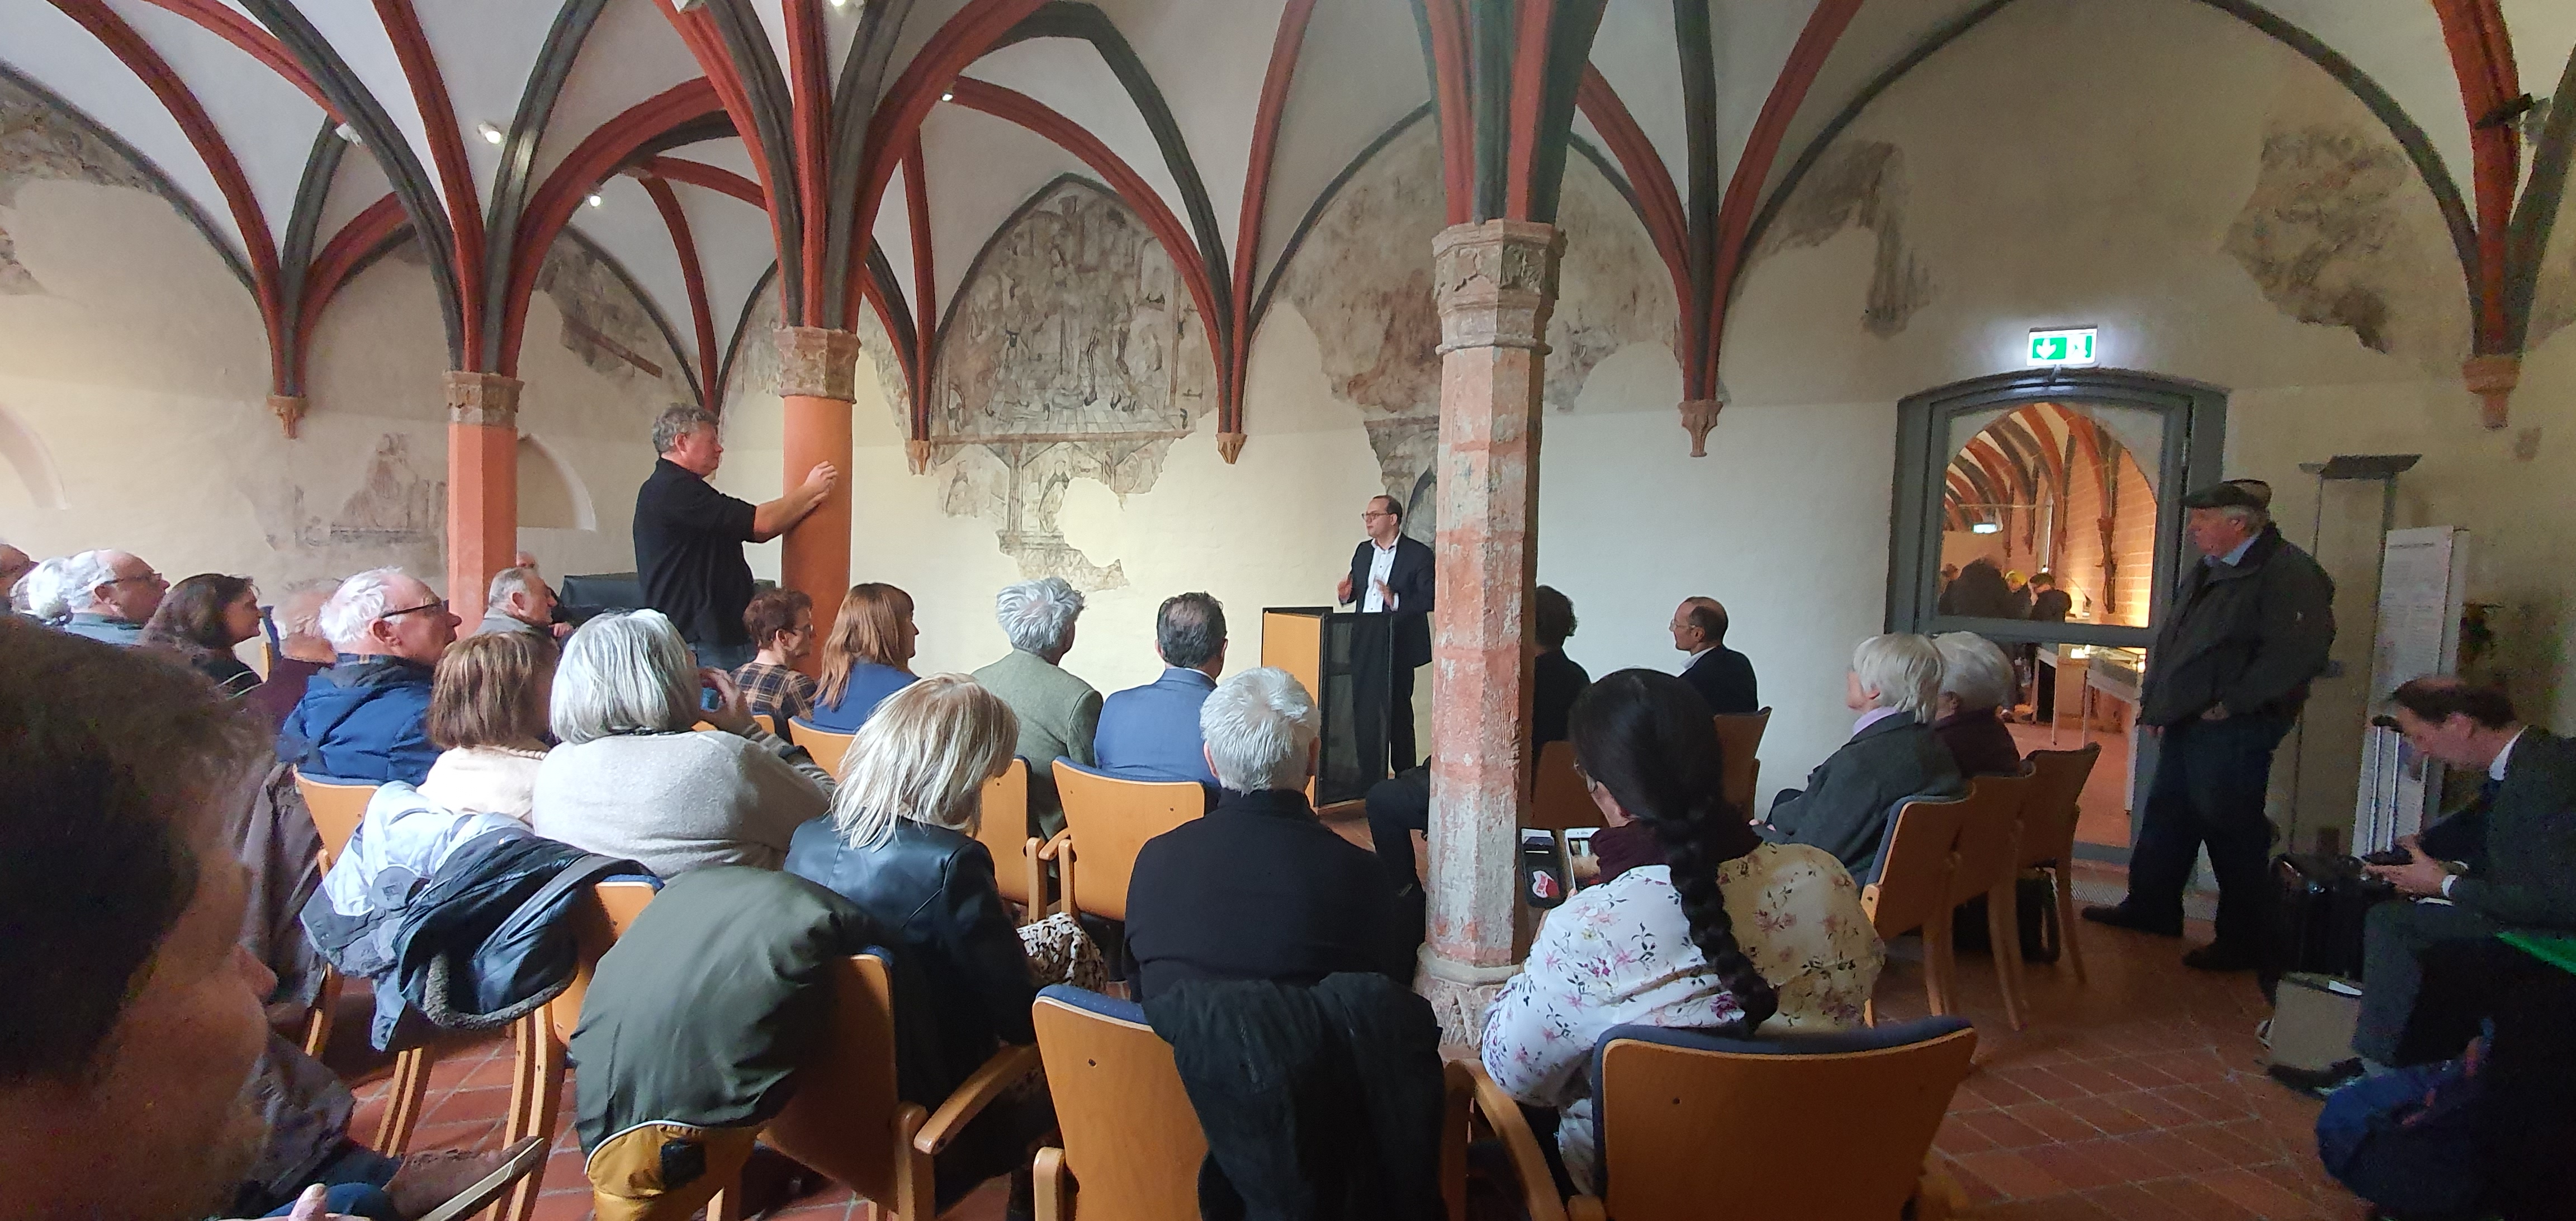 Auf dem Foto ist Staatssekretär Dünow am Rednerpult vor großem Publikum im Kloster zu sehen